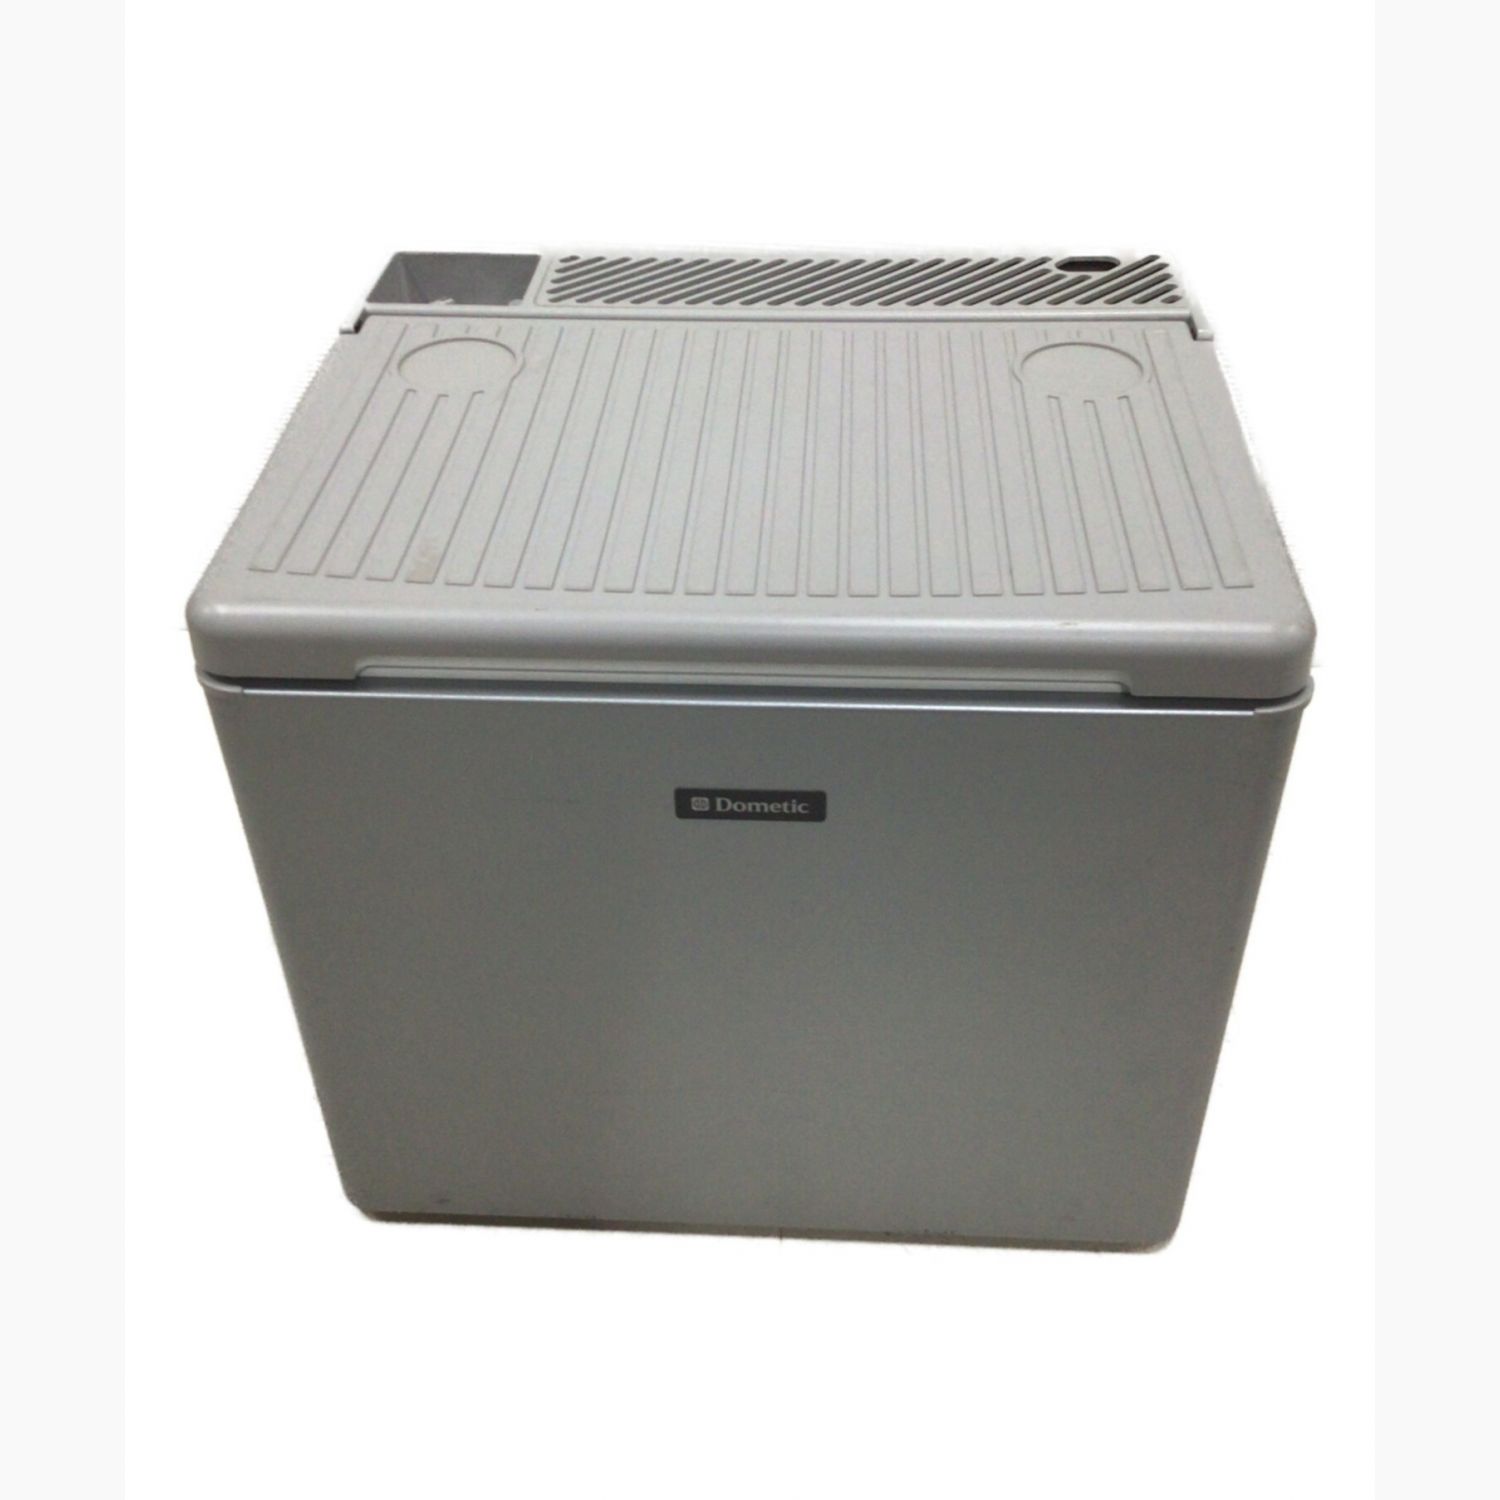 Dometic (ドメティック) クーラーボックス 33L グレー RC1602EGC ポータブル 3way冷蔵庫｜トレファクONLINE